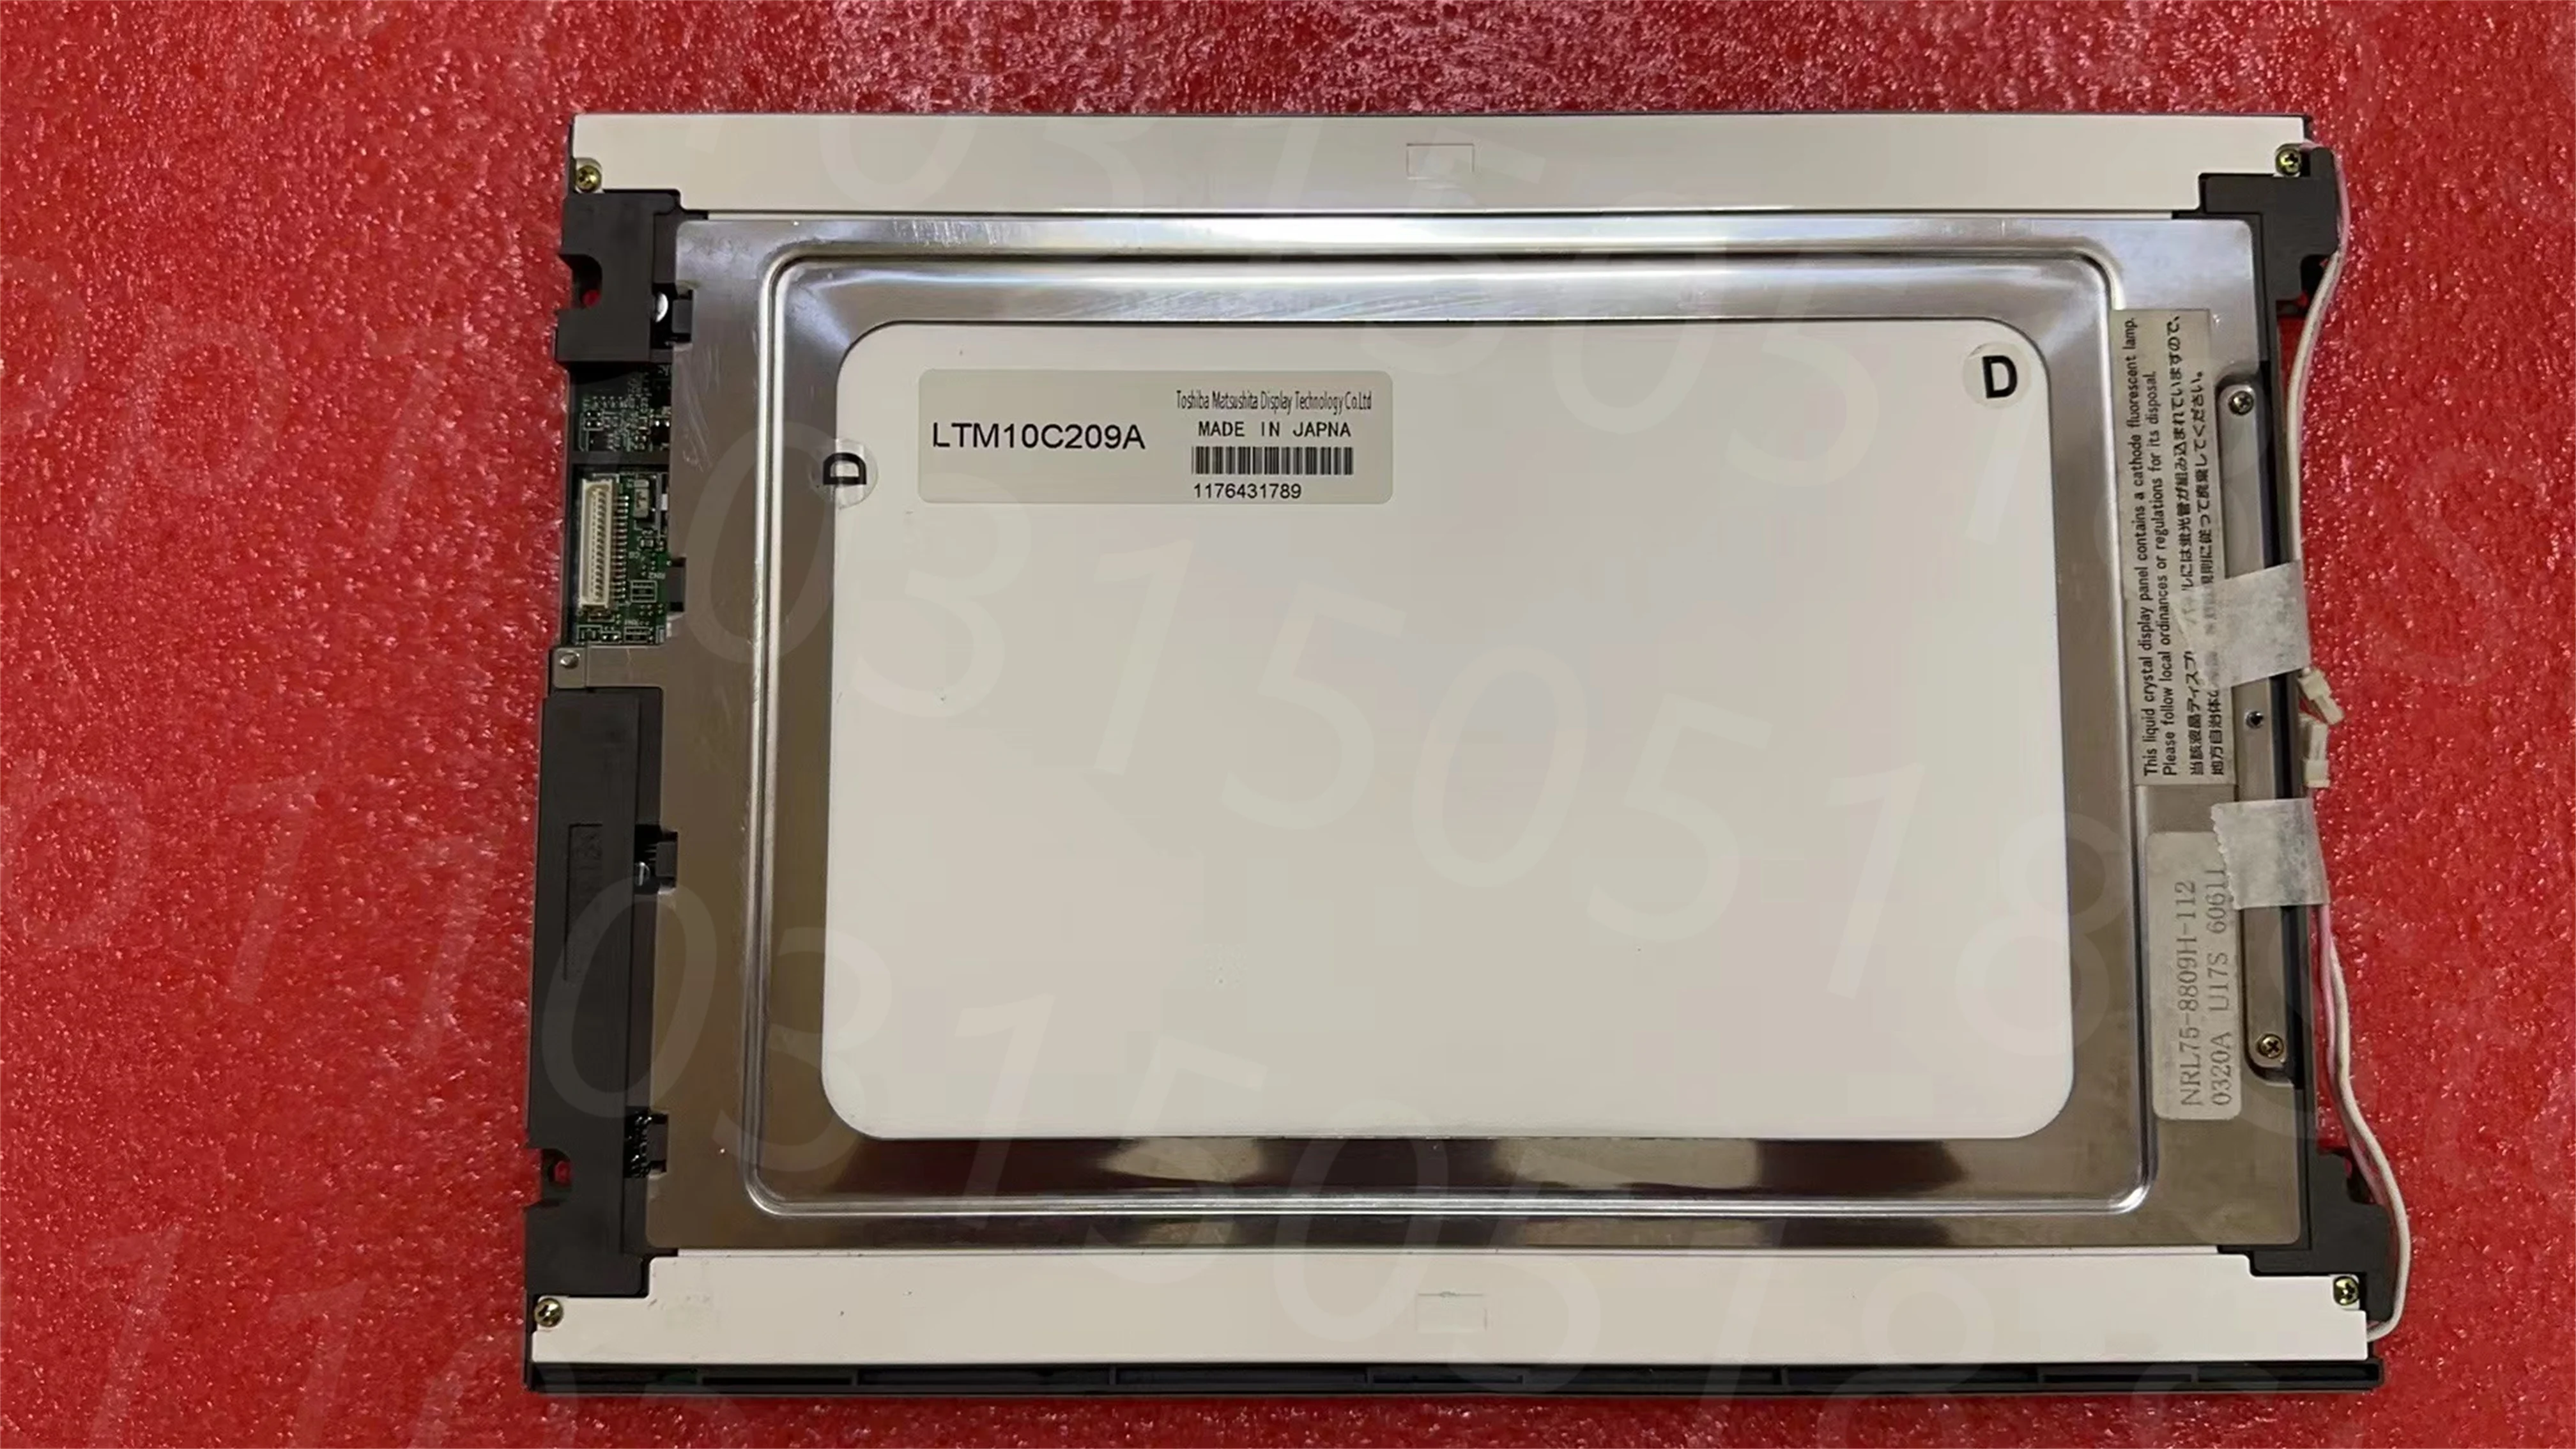 LCD modul LTM10C209A za 10,4 cm, 640*480, primerna za Toshiba plošče. 90 dni garancije